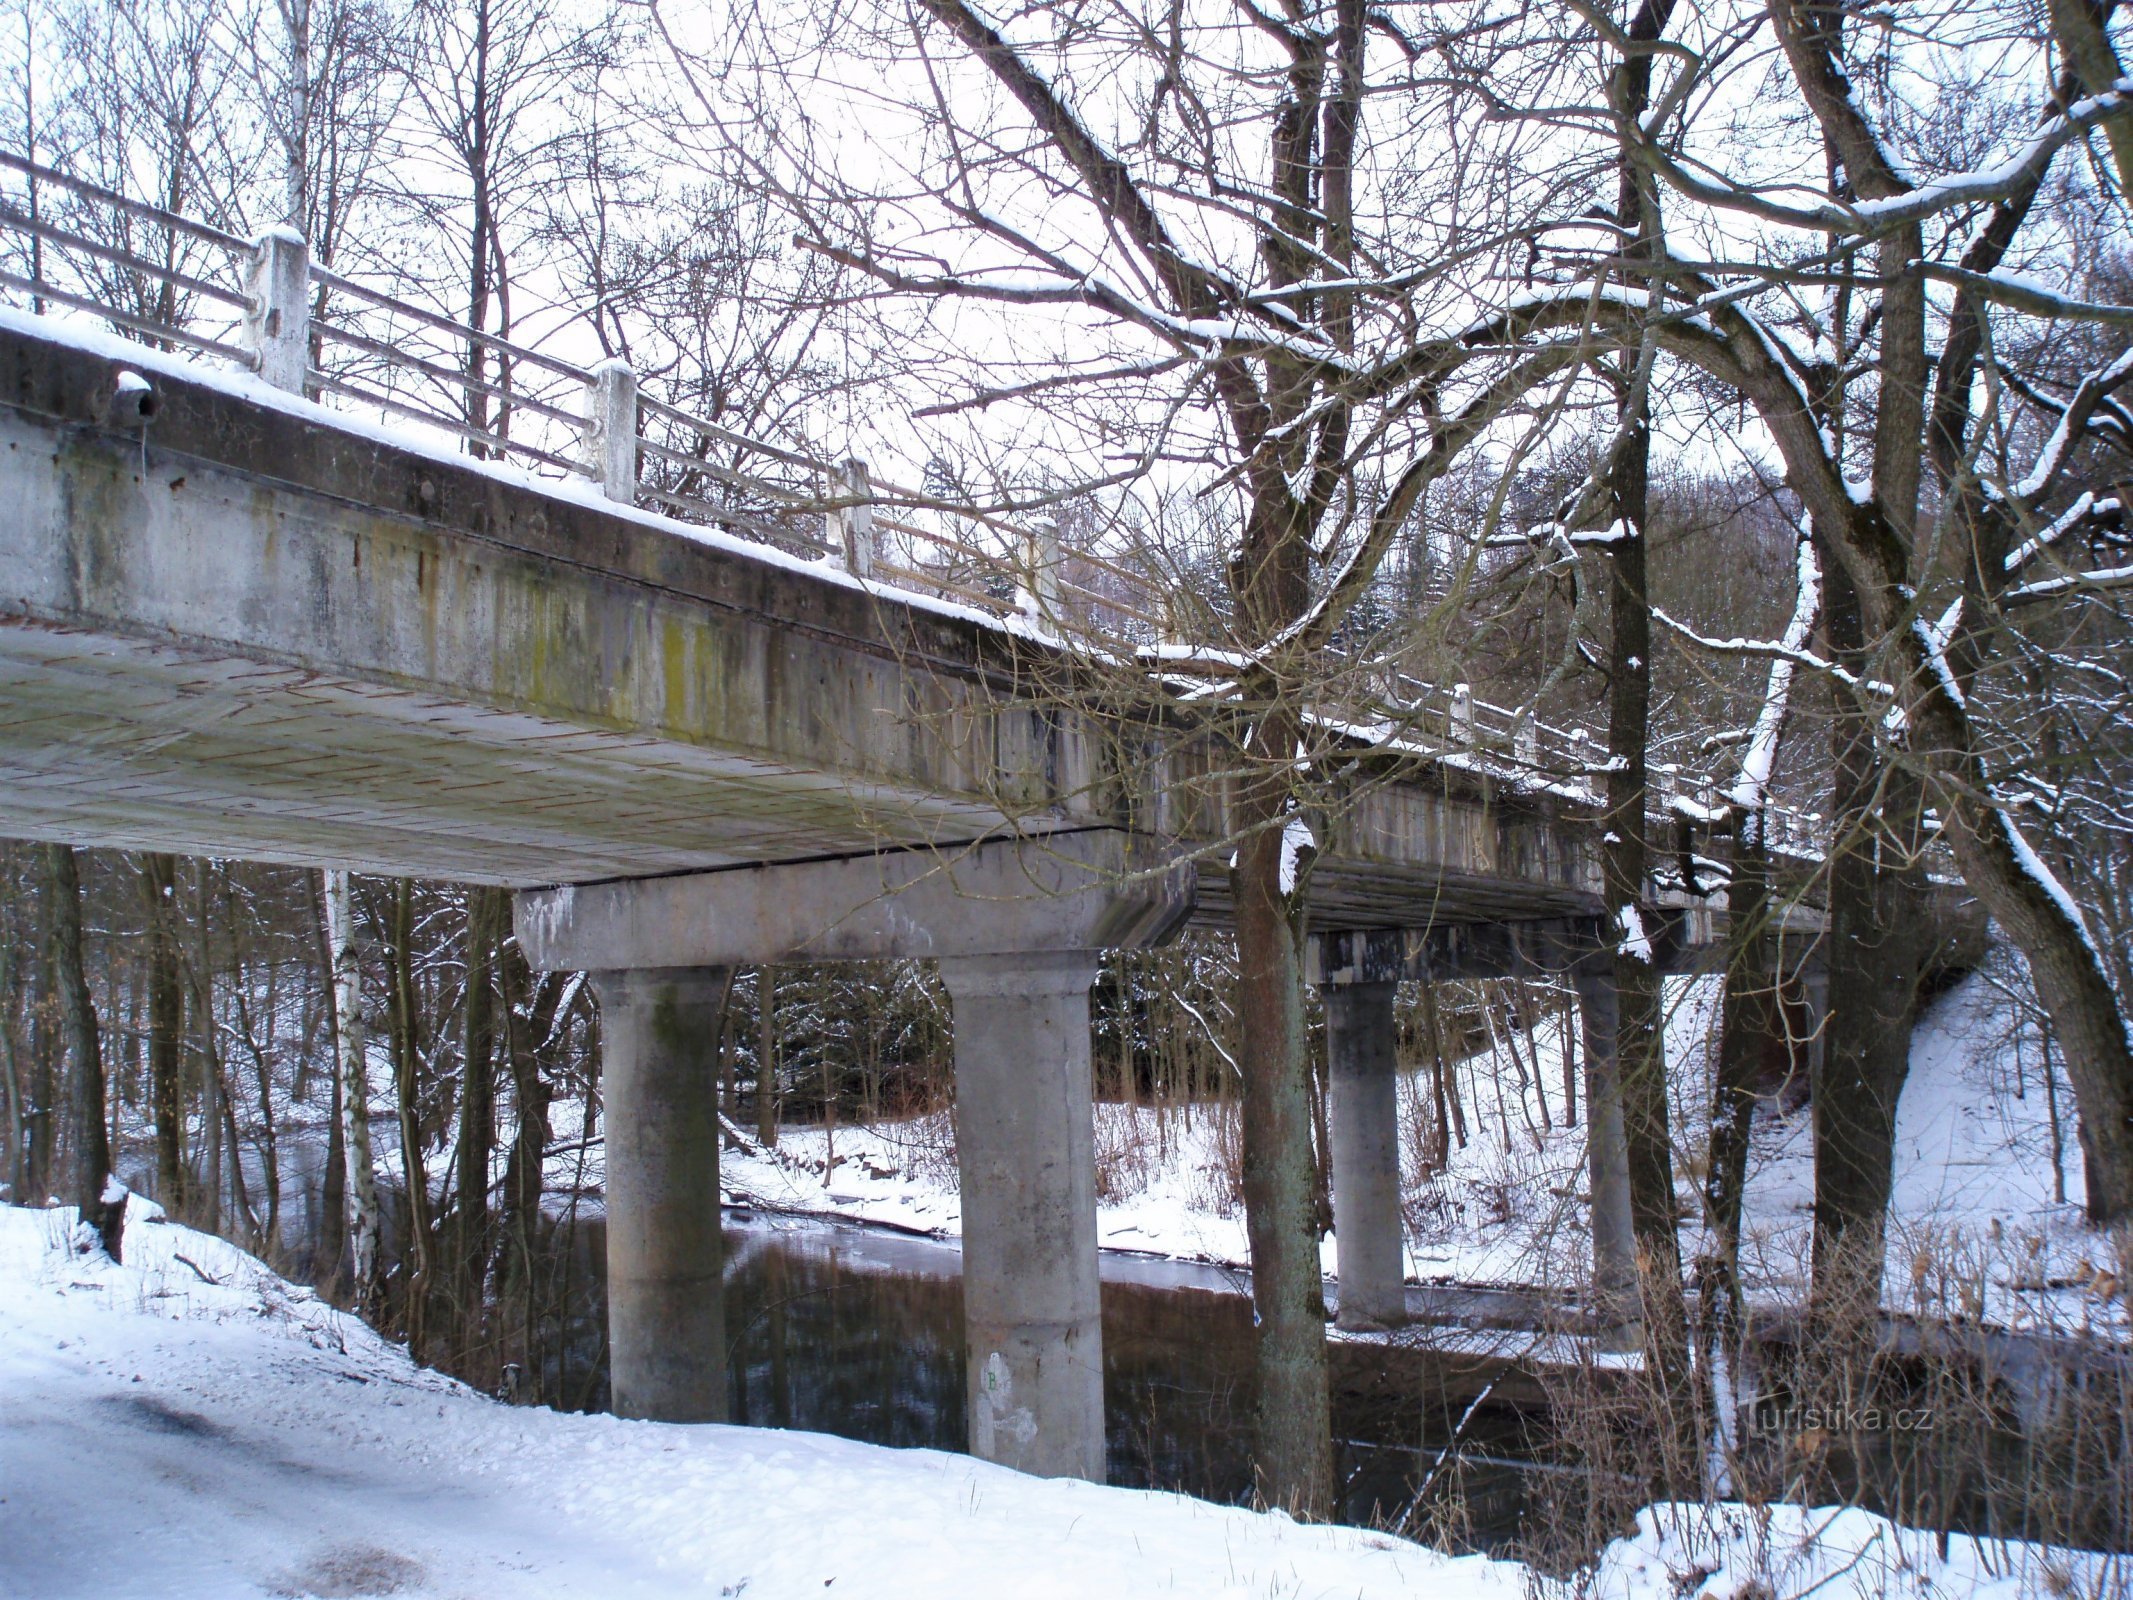 Cầu Slatina trước khi được xây dựng lại (Slatina nad Úpou)